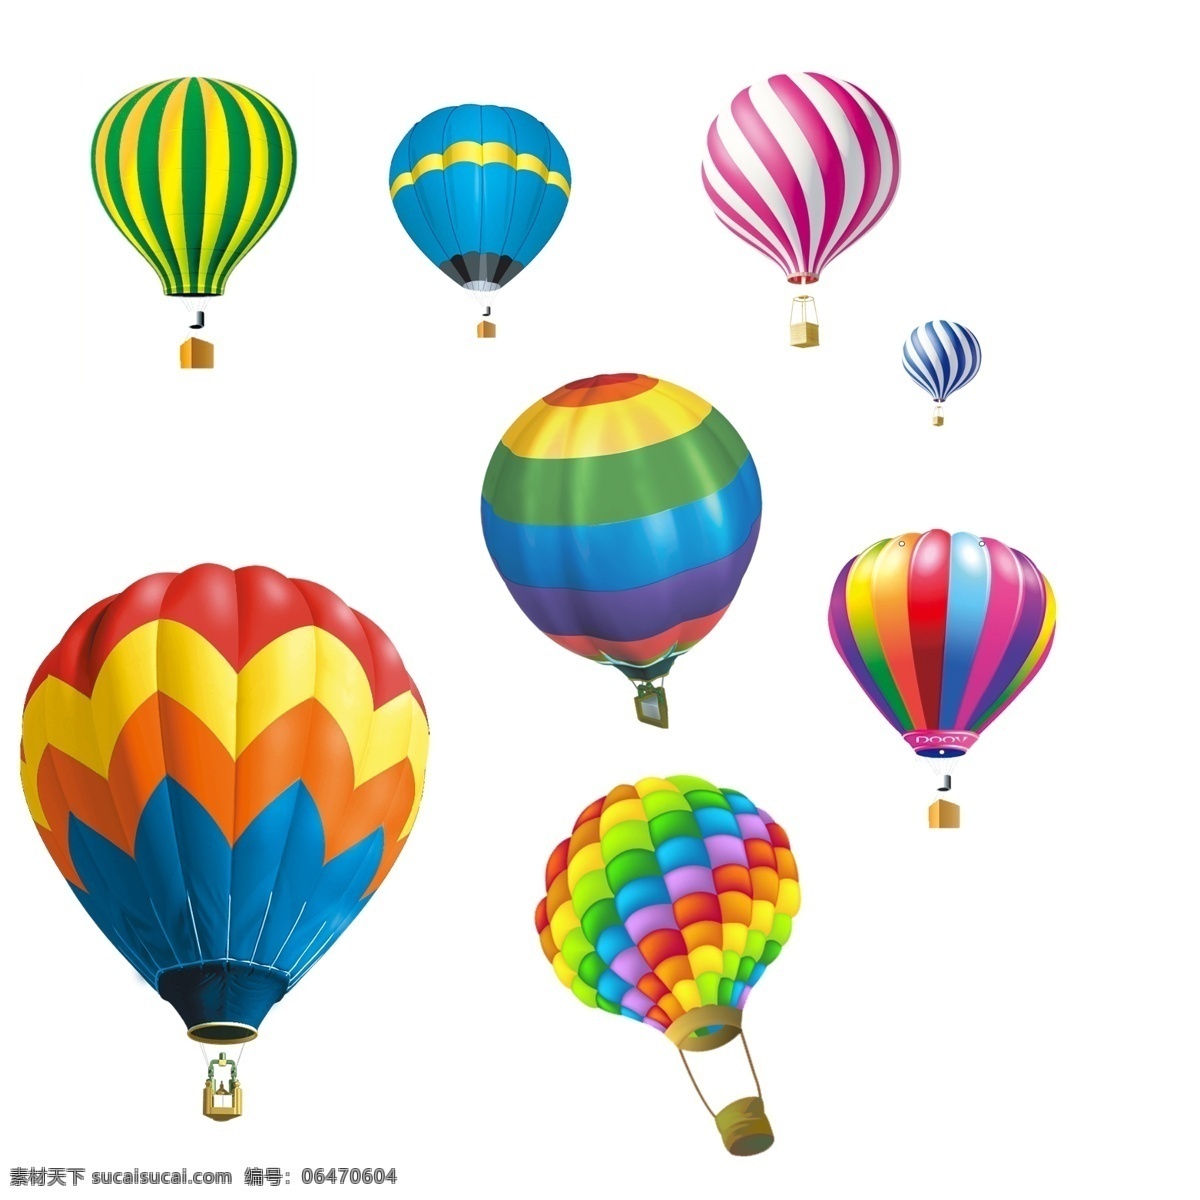 热气球 热气球素材 气球 各种热气球 彩色热气球 彩色气球 氢气球 开业气球 五彩热气球 气球素材 卡通热气球 红色热气球 球 婚庆素材 婚礼素材 绿色热气球 蓝色热气球 红色热气流 白色热气球